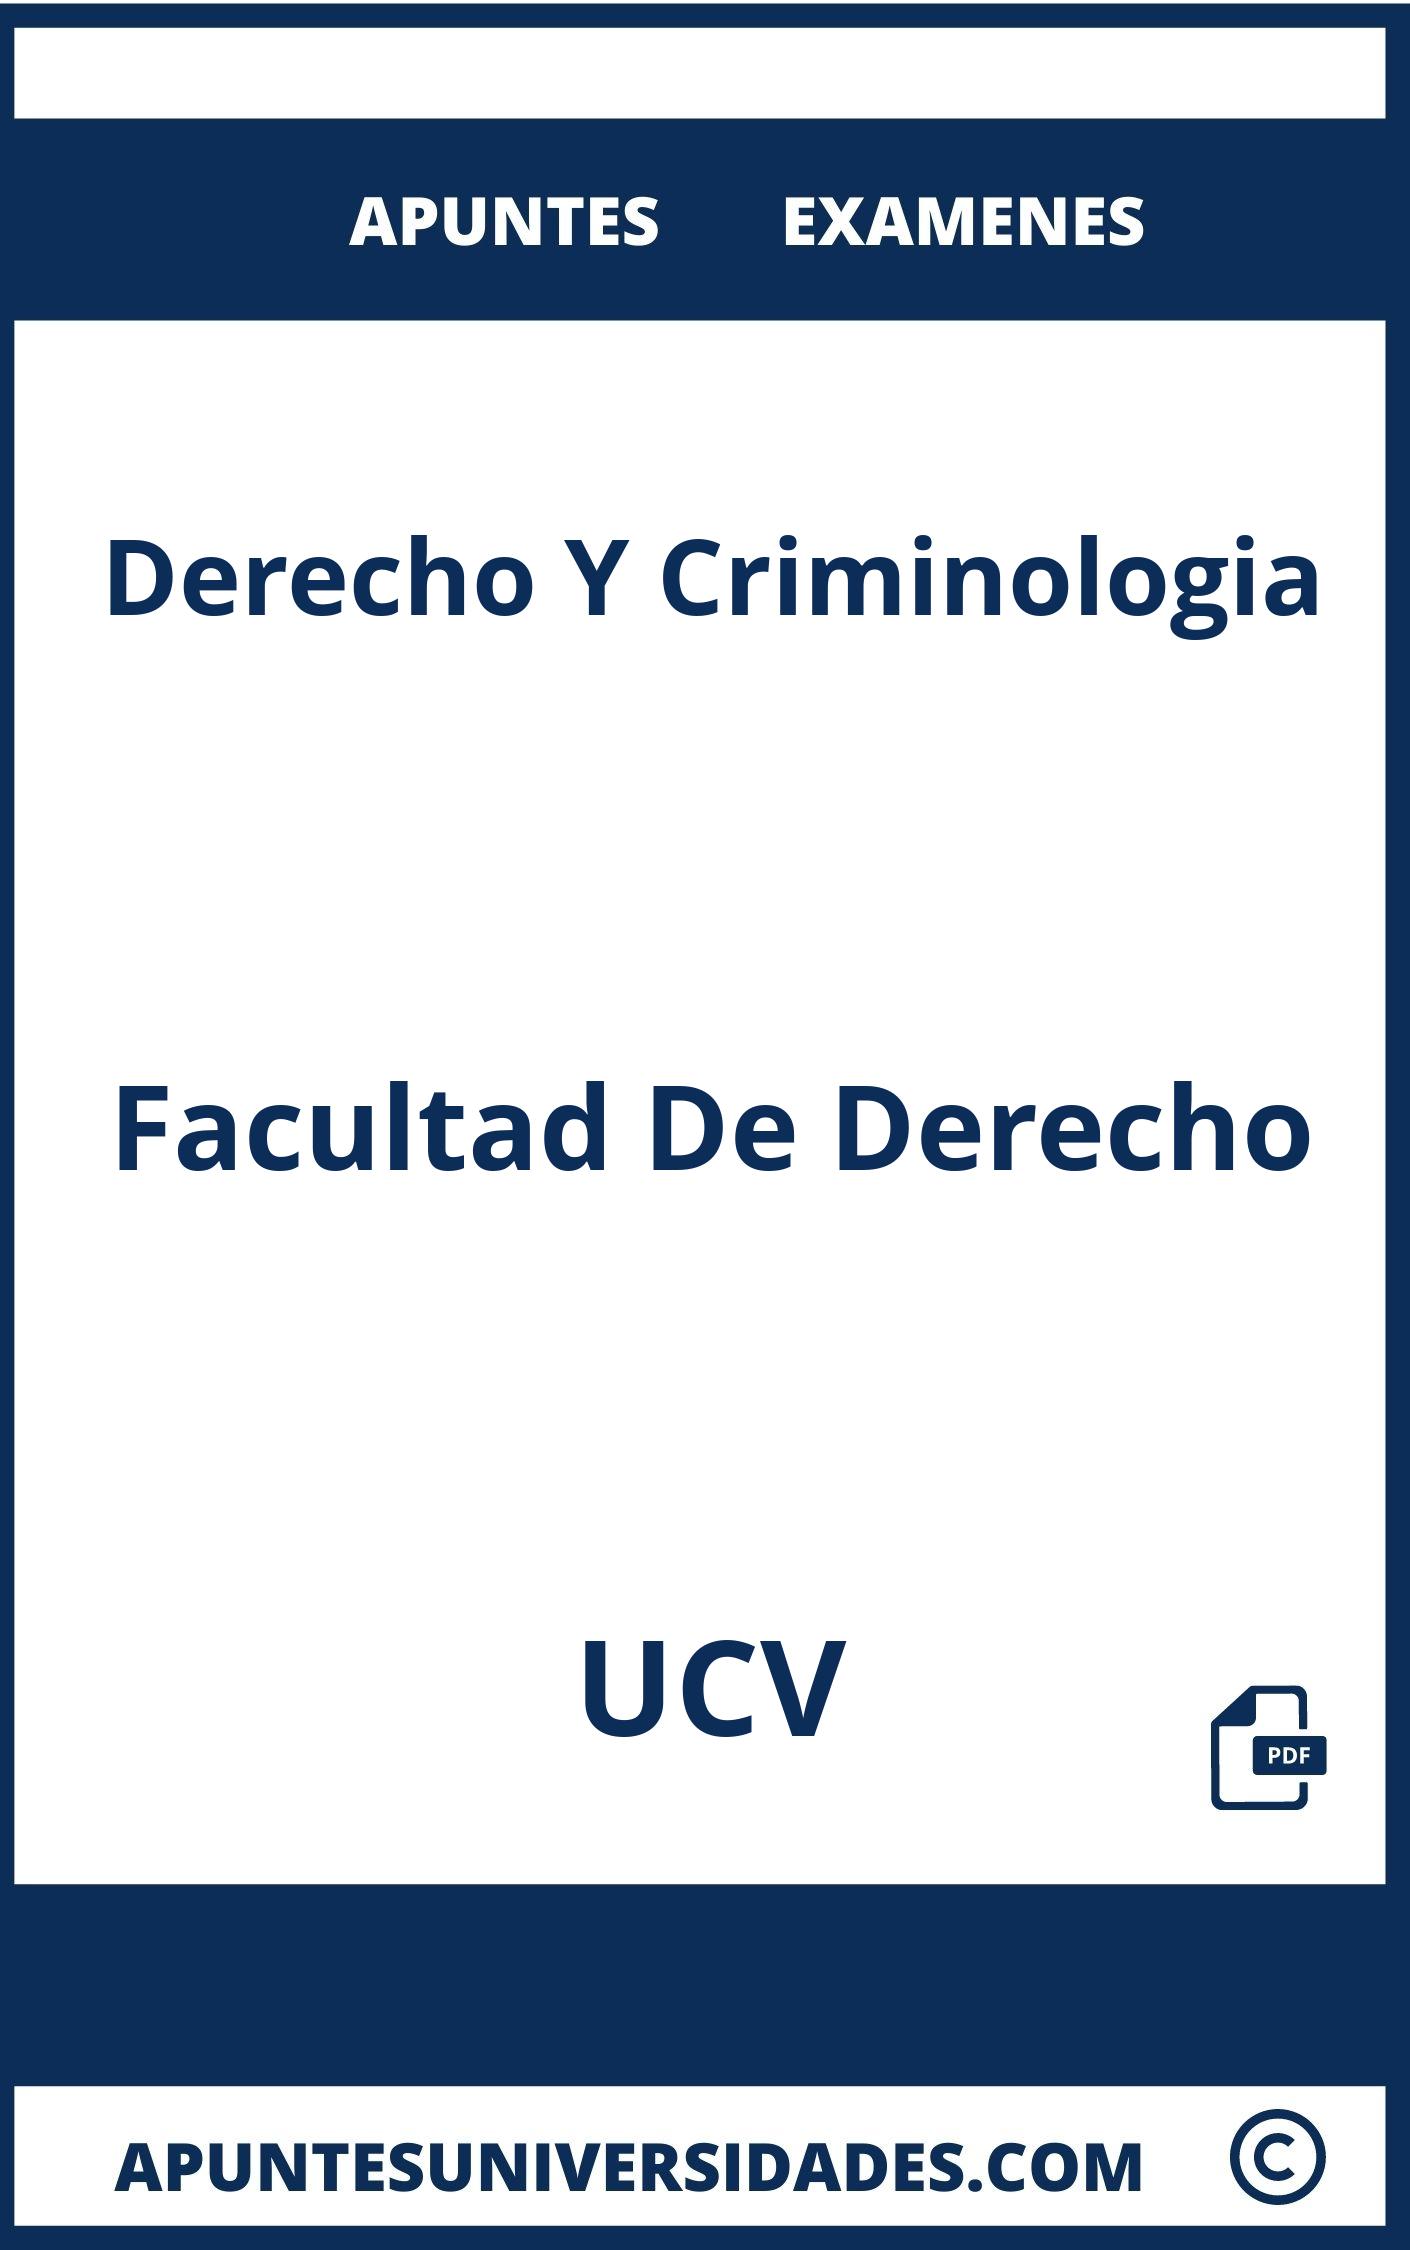 Apuntes y Examenes de Derecho Y Criminologia UCV